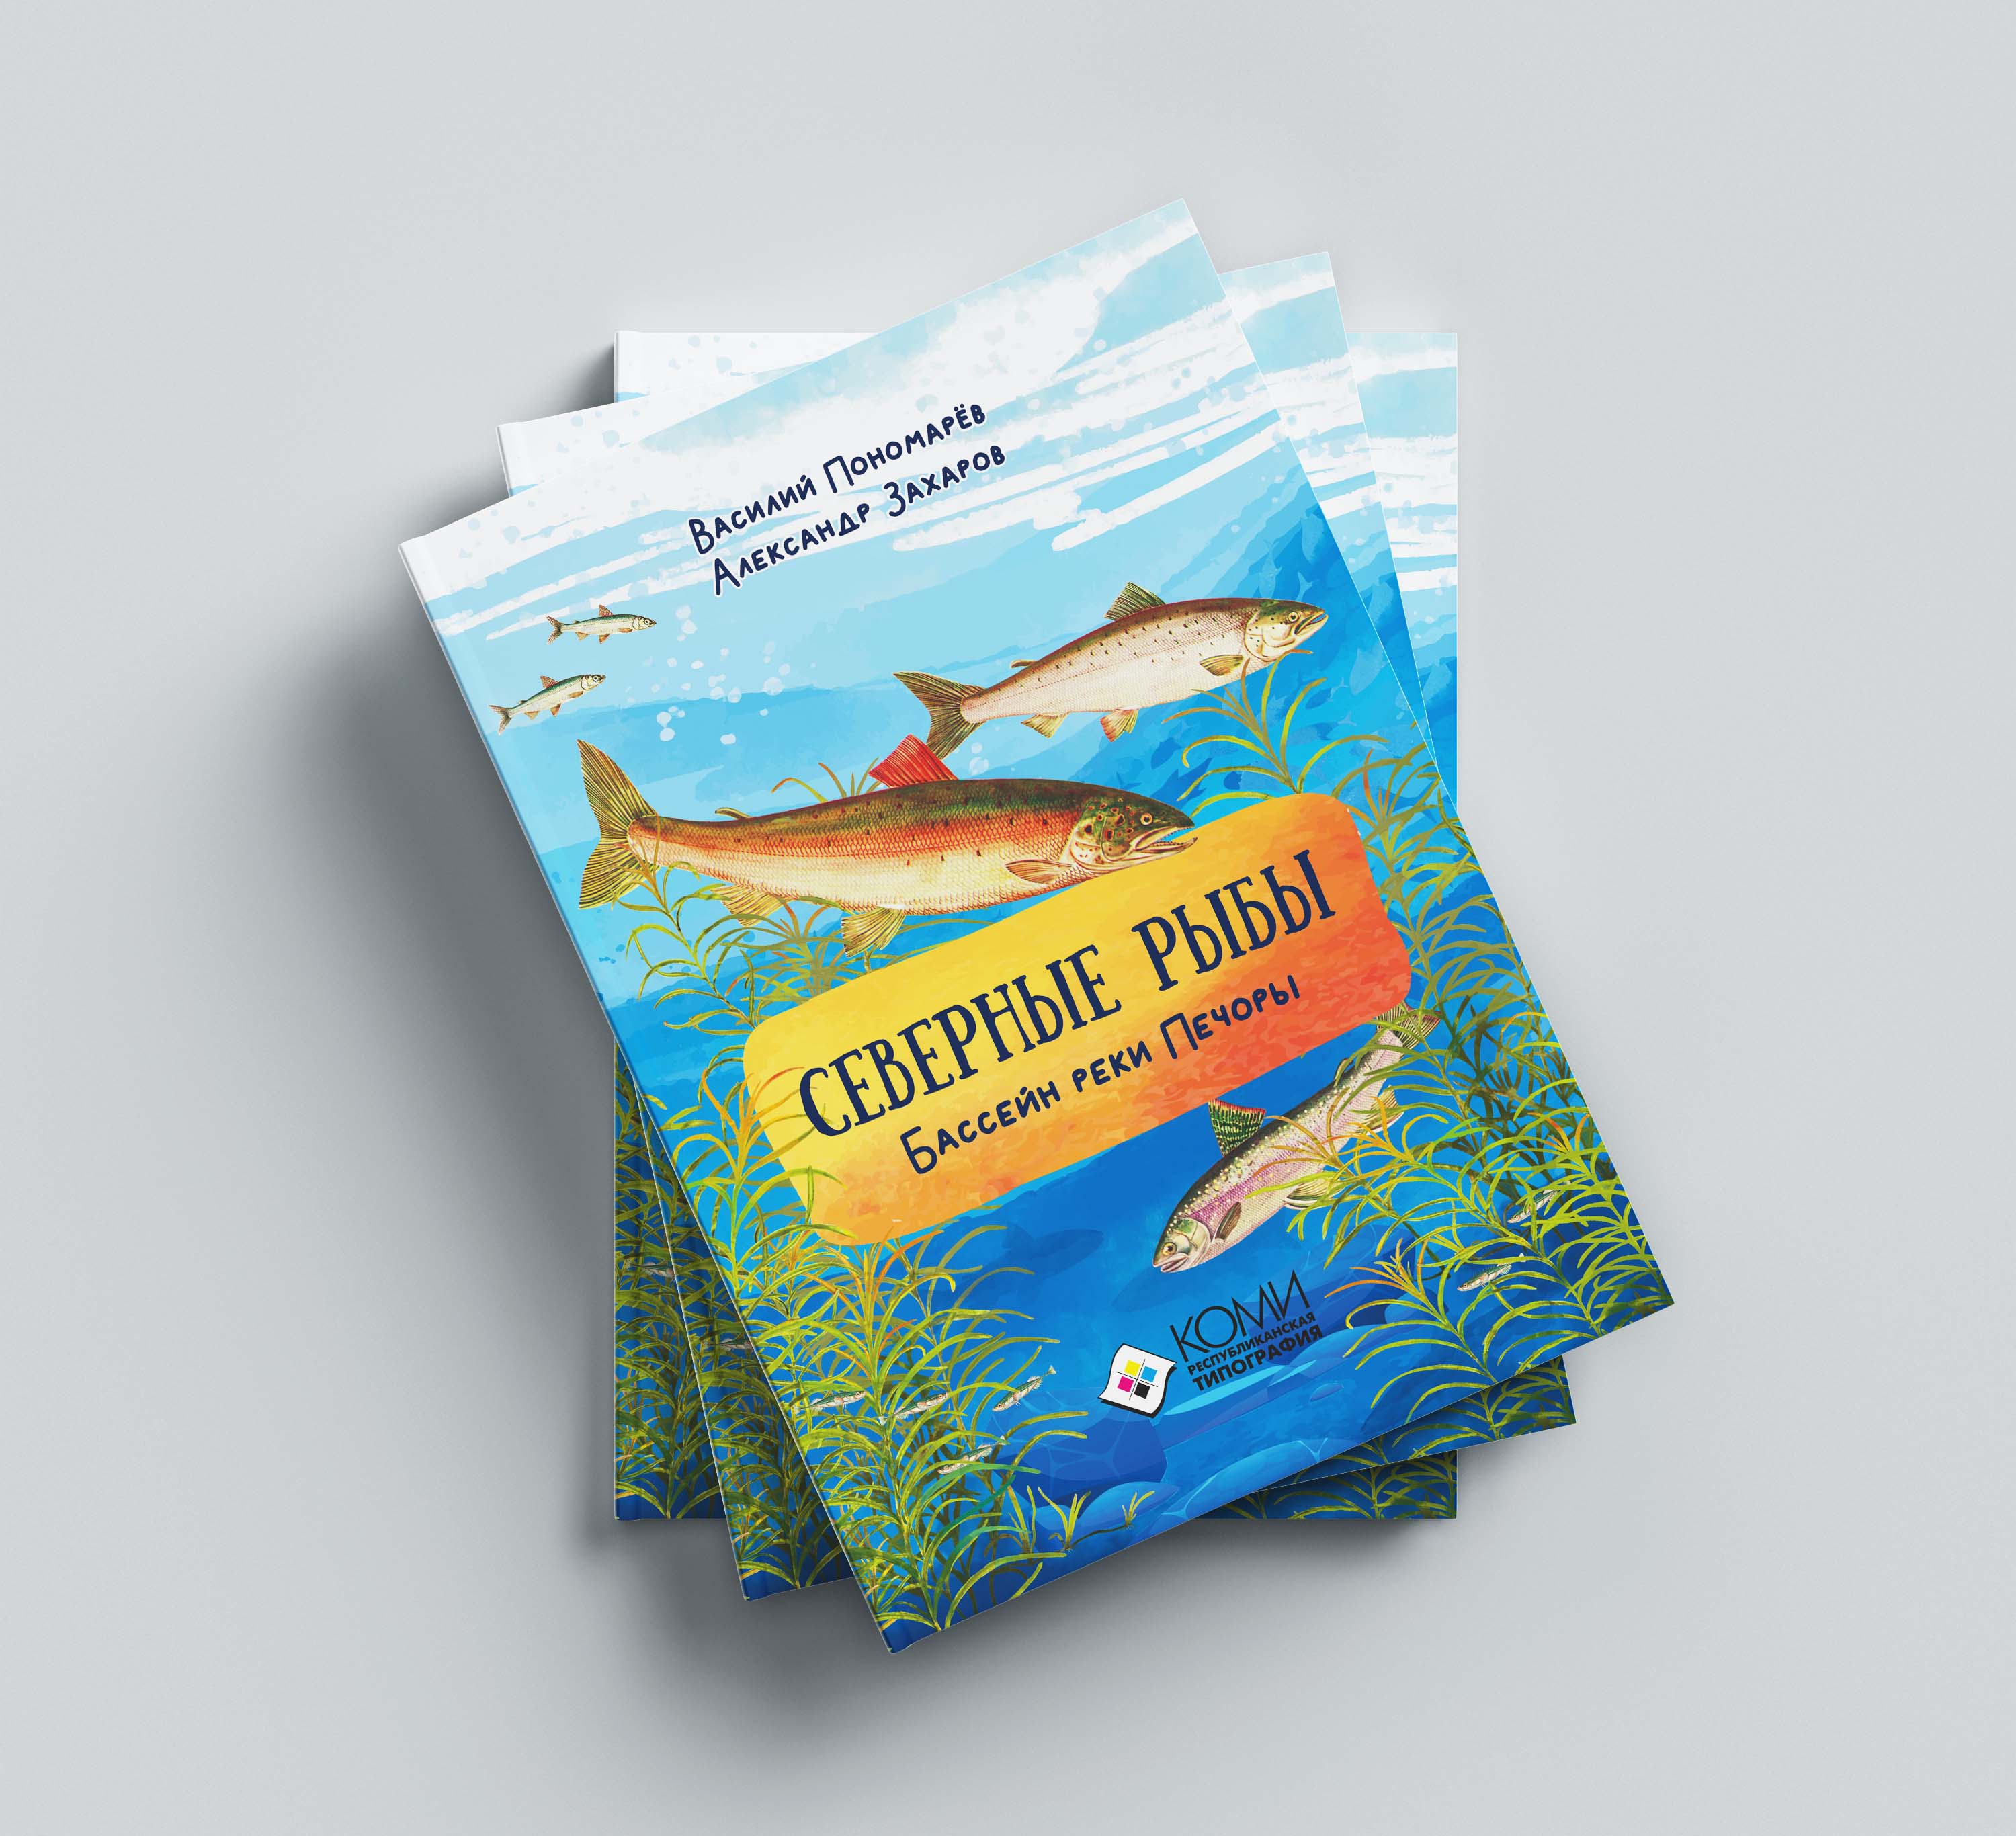 Книги про рыб. Северные рыбы бассейн реки Печоры. Северные рыбы книга. Ихтиофауна реки Печора. Северная рыба.